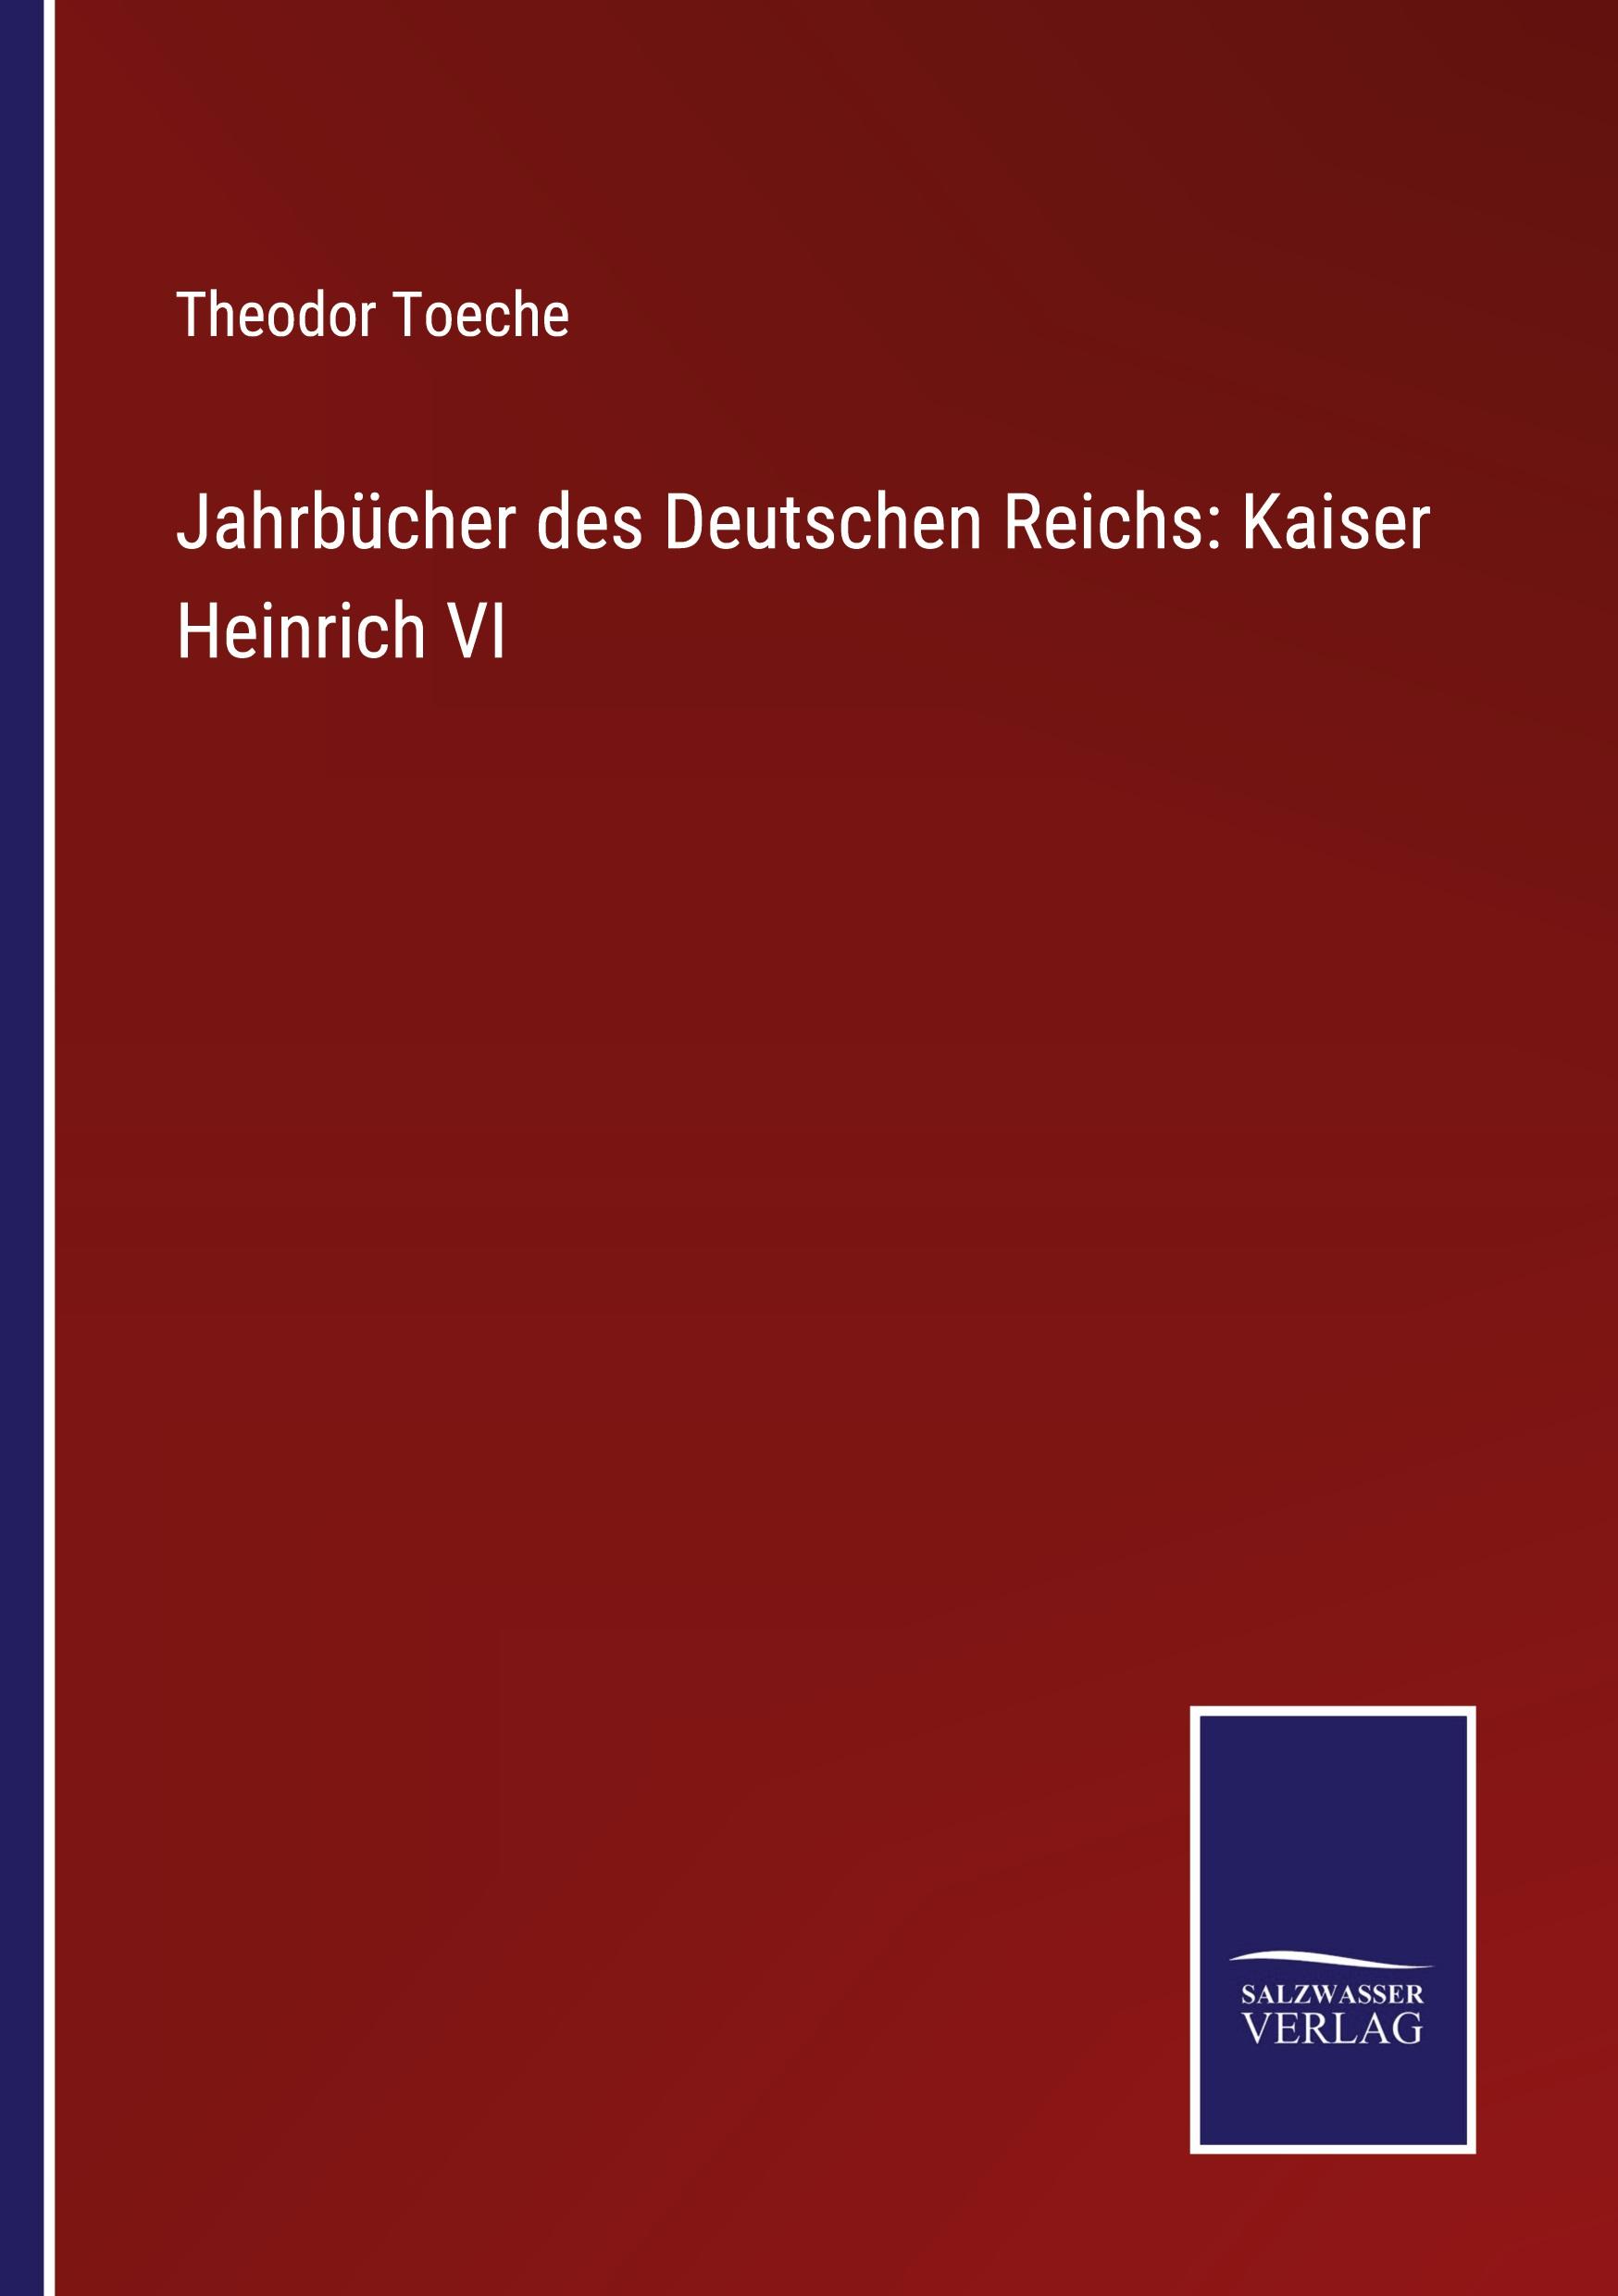 Jahrbuecher des Deutschen Reichs: Kaiser Heinrich VI - Toeche, Theodor